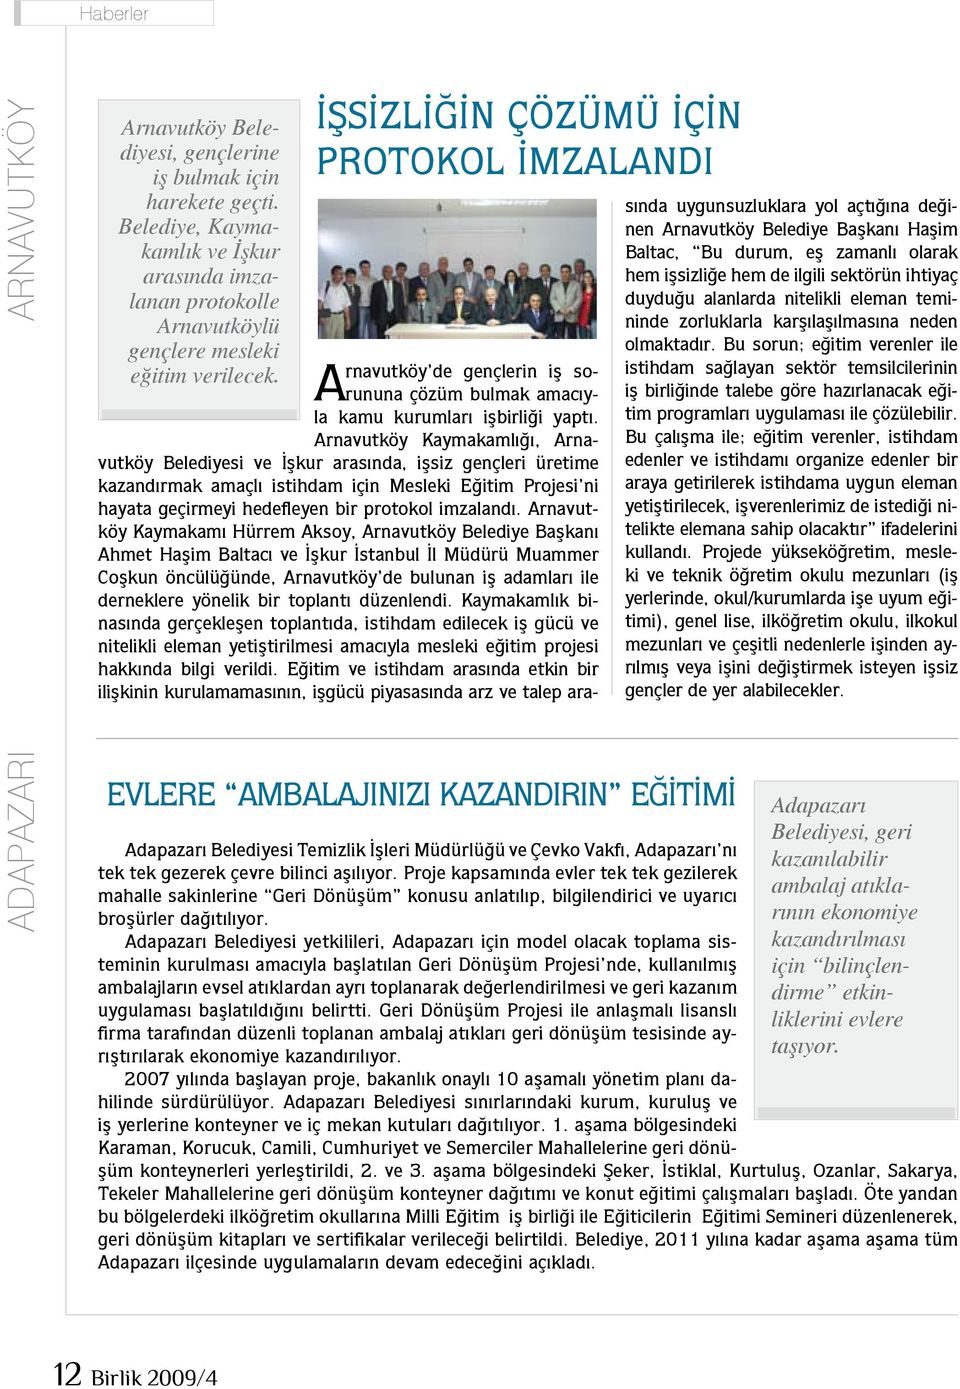 Arnavutköy Kaymakamlığı, Arnavutköy Belediyesi ve İşkur arasında, işsiz gençleri üretime kazandırmak amaçlı istihdam için Mesleki Eğitim Projesi ni hayata geçirmeyi hedefleyen bir protokol imzalandı.